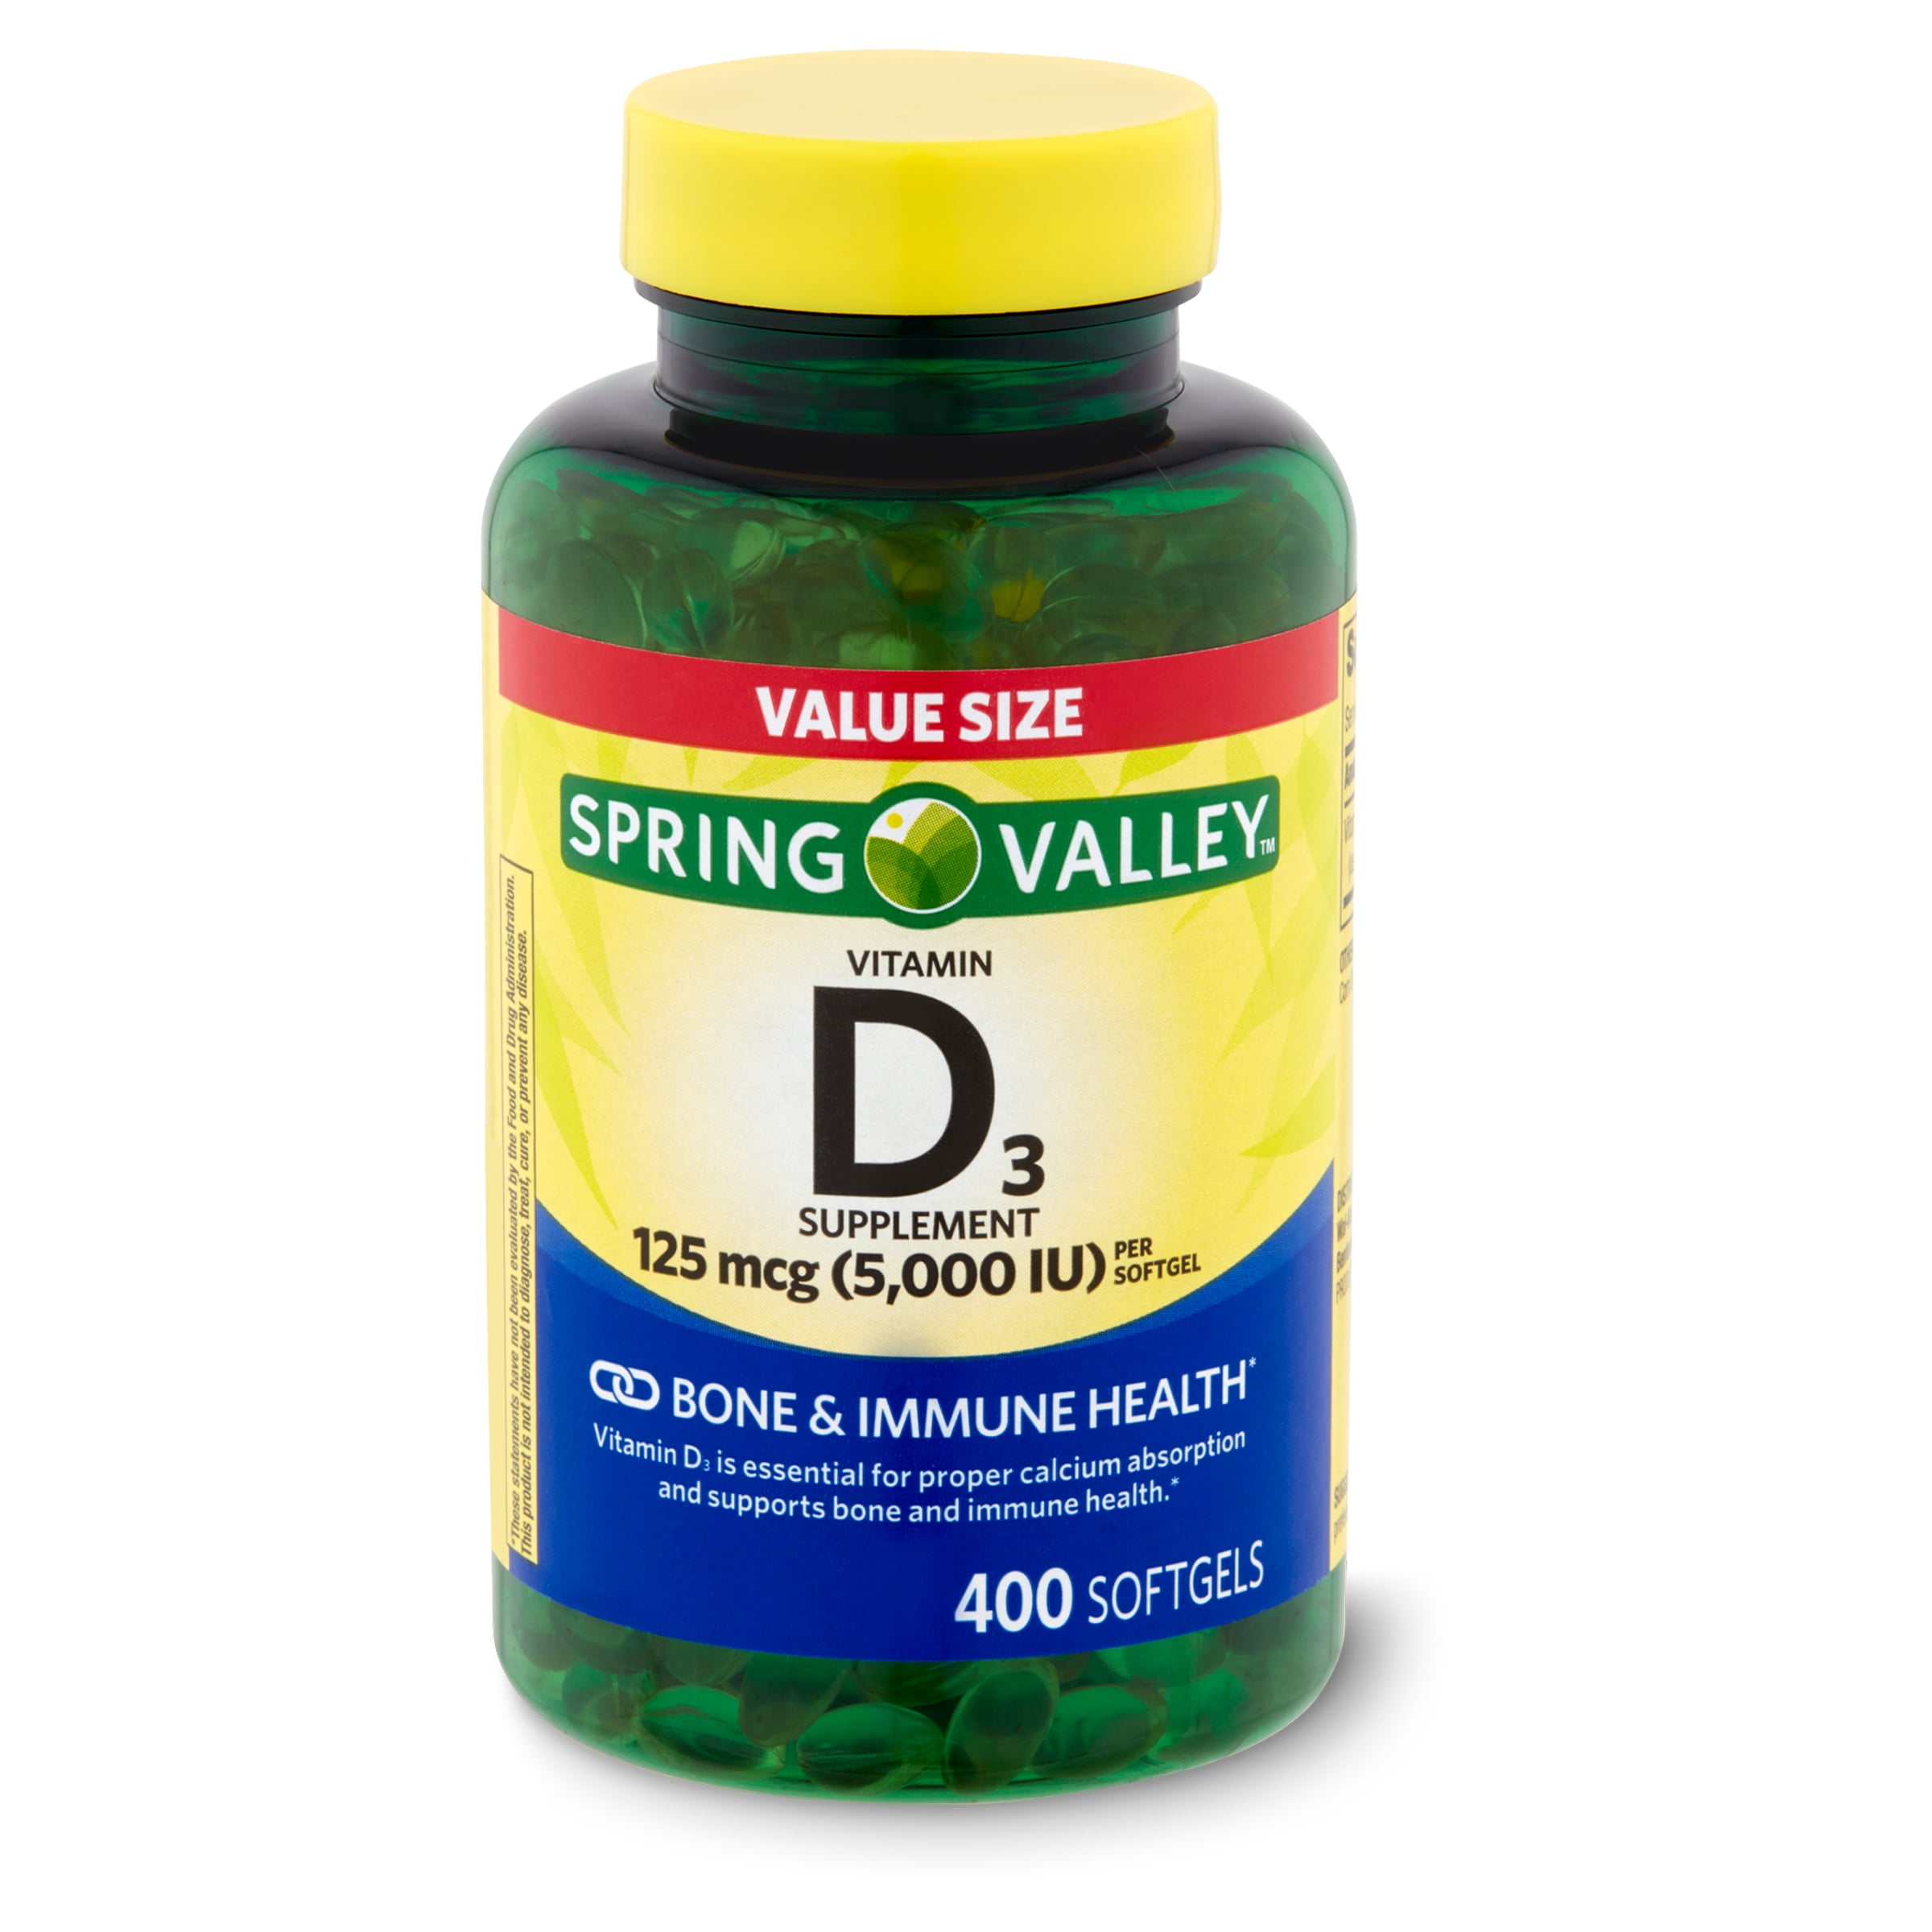 Ongeëvenaard opslag stoomboot Spring Valley Vitamin D3 Softgels, 125 mcg per Softgel, 5,000 IU, 400 Count  - Walmart.com